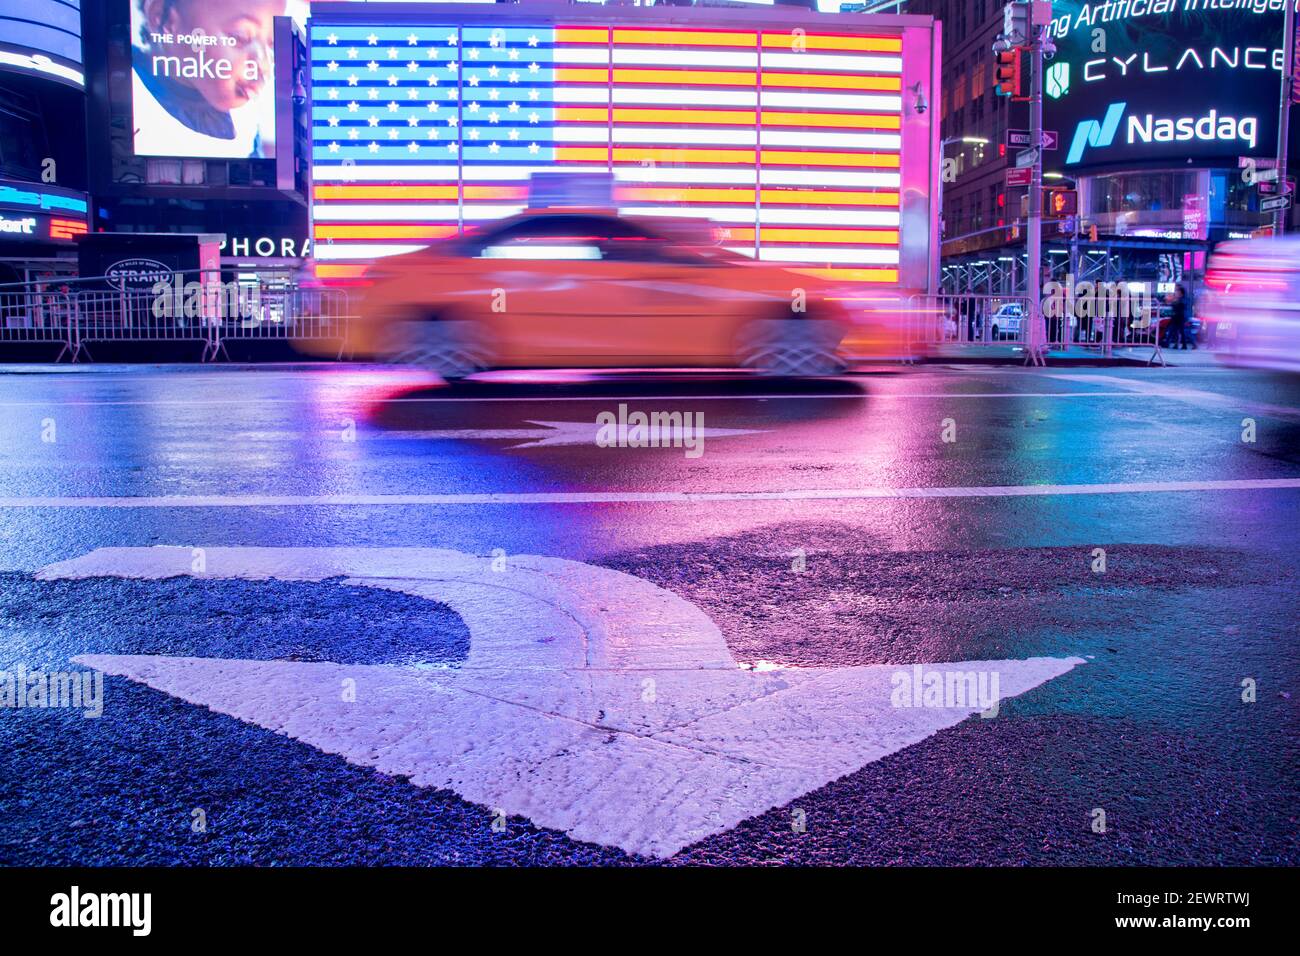 Taxi verschwimmt durch eine beleuchtete Flagge der Vereinigten Staaten von Amerika am Times Square, New York City, Vereinigte Staaten von Amerika, Nordamerika Stockfoto